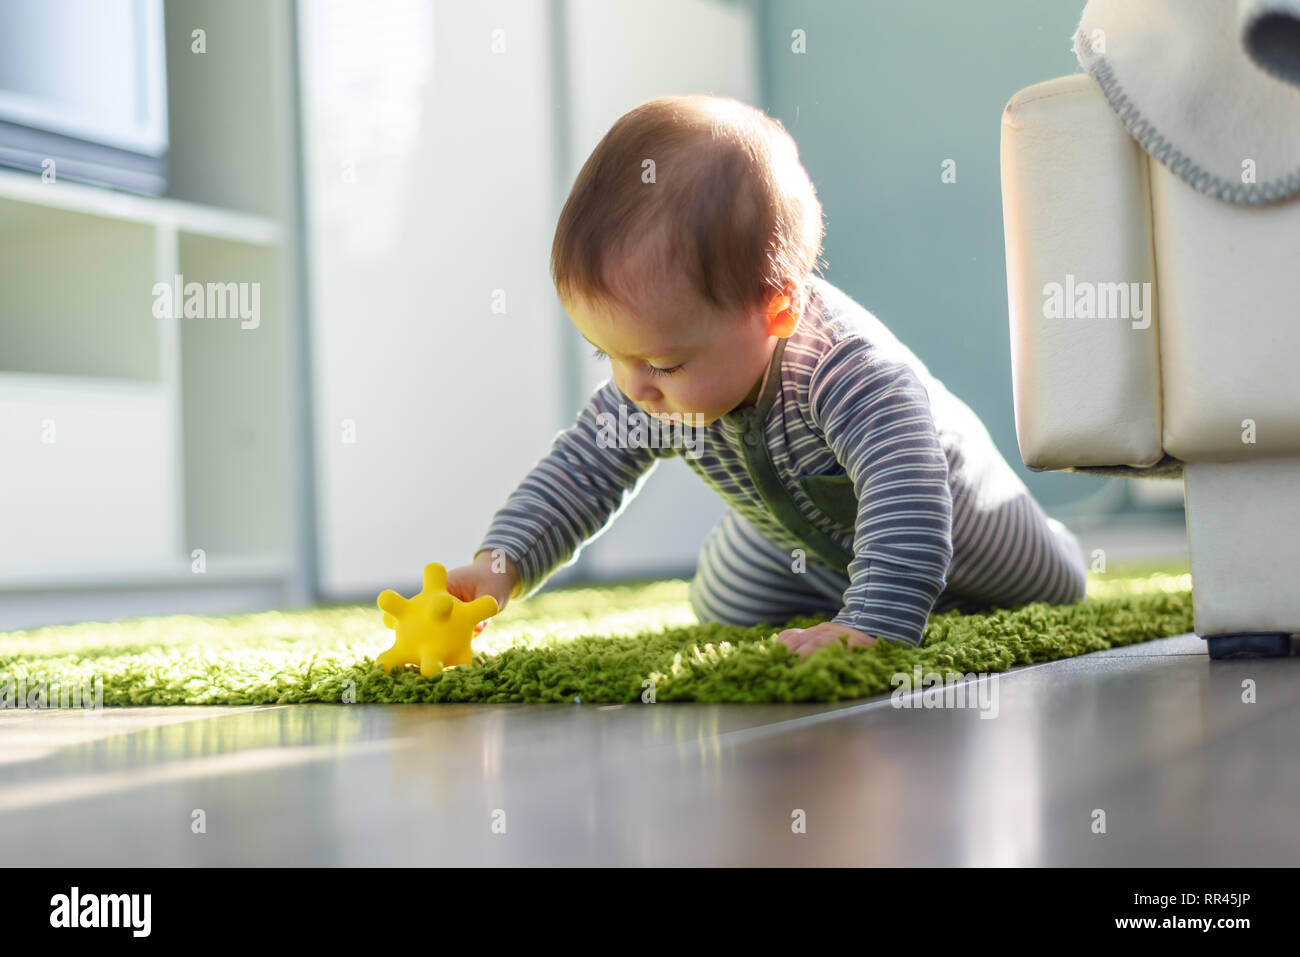 Garçon jouant sur tapis vert libre. Concept de la petite enfance Banque D'Images